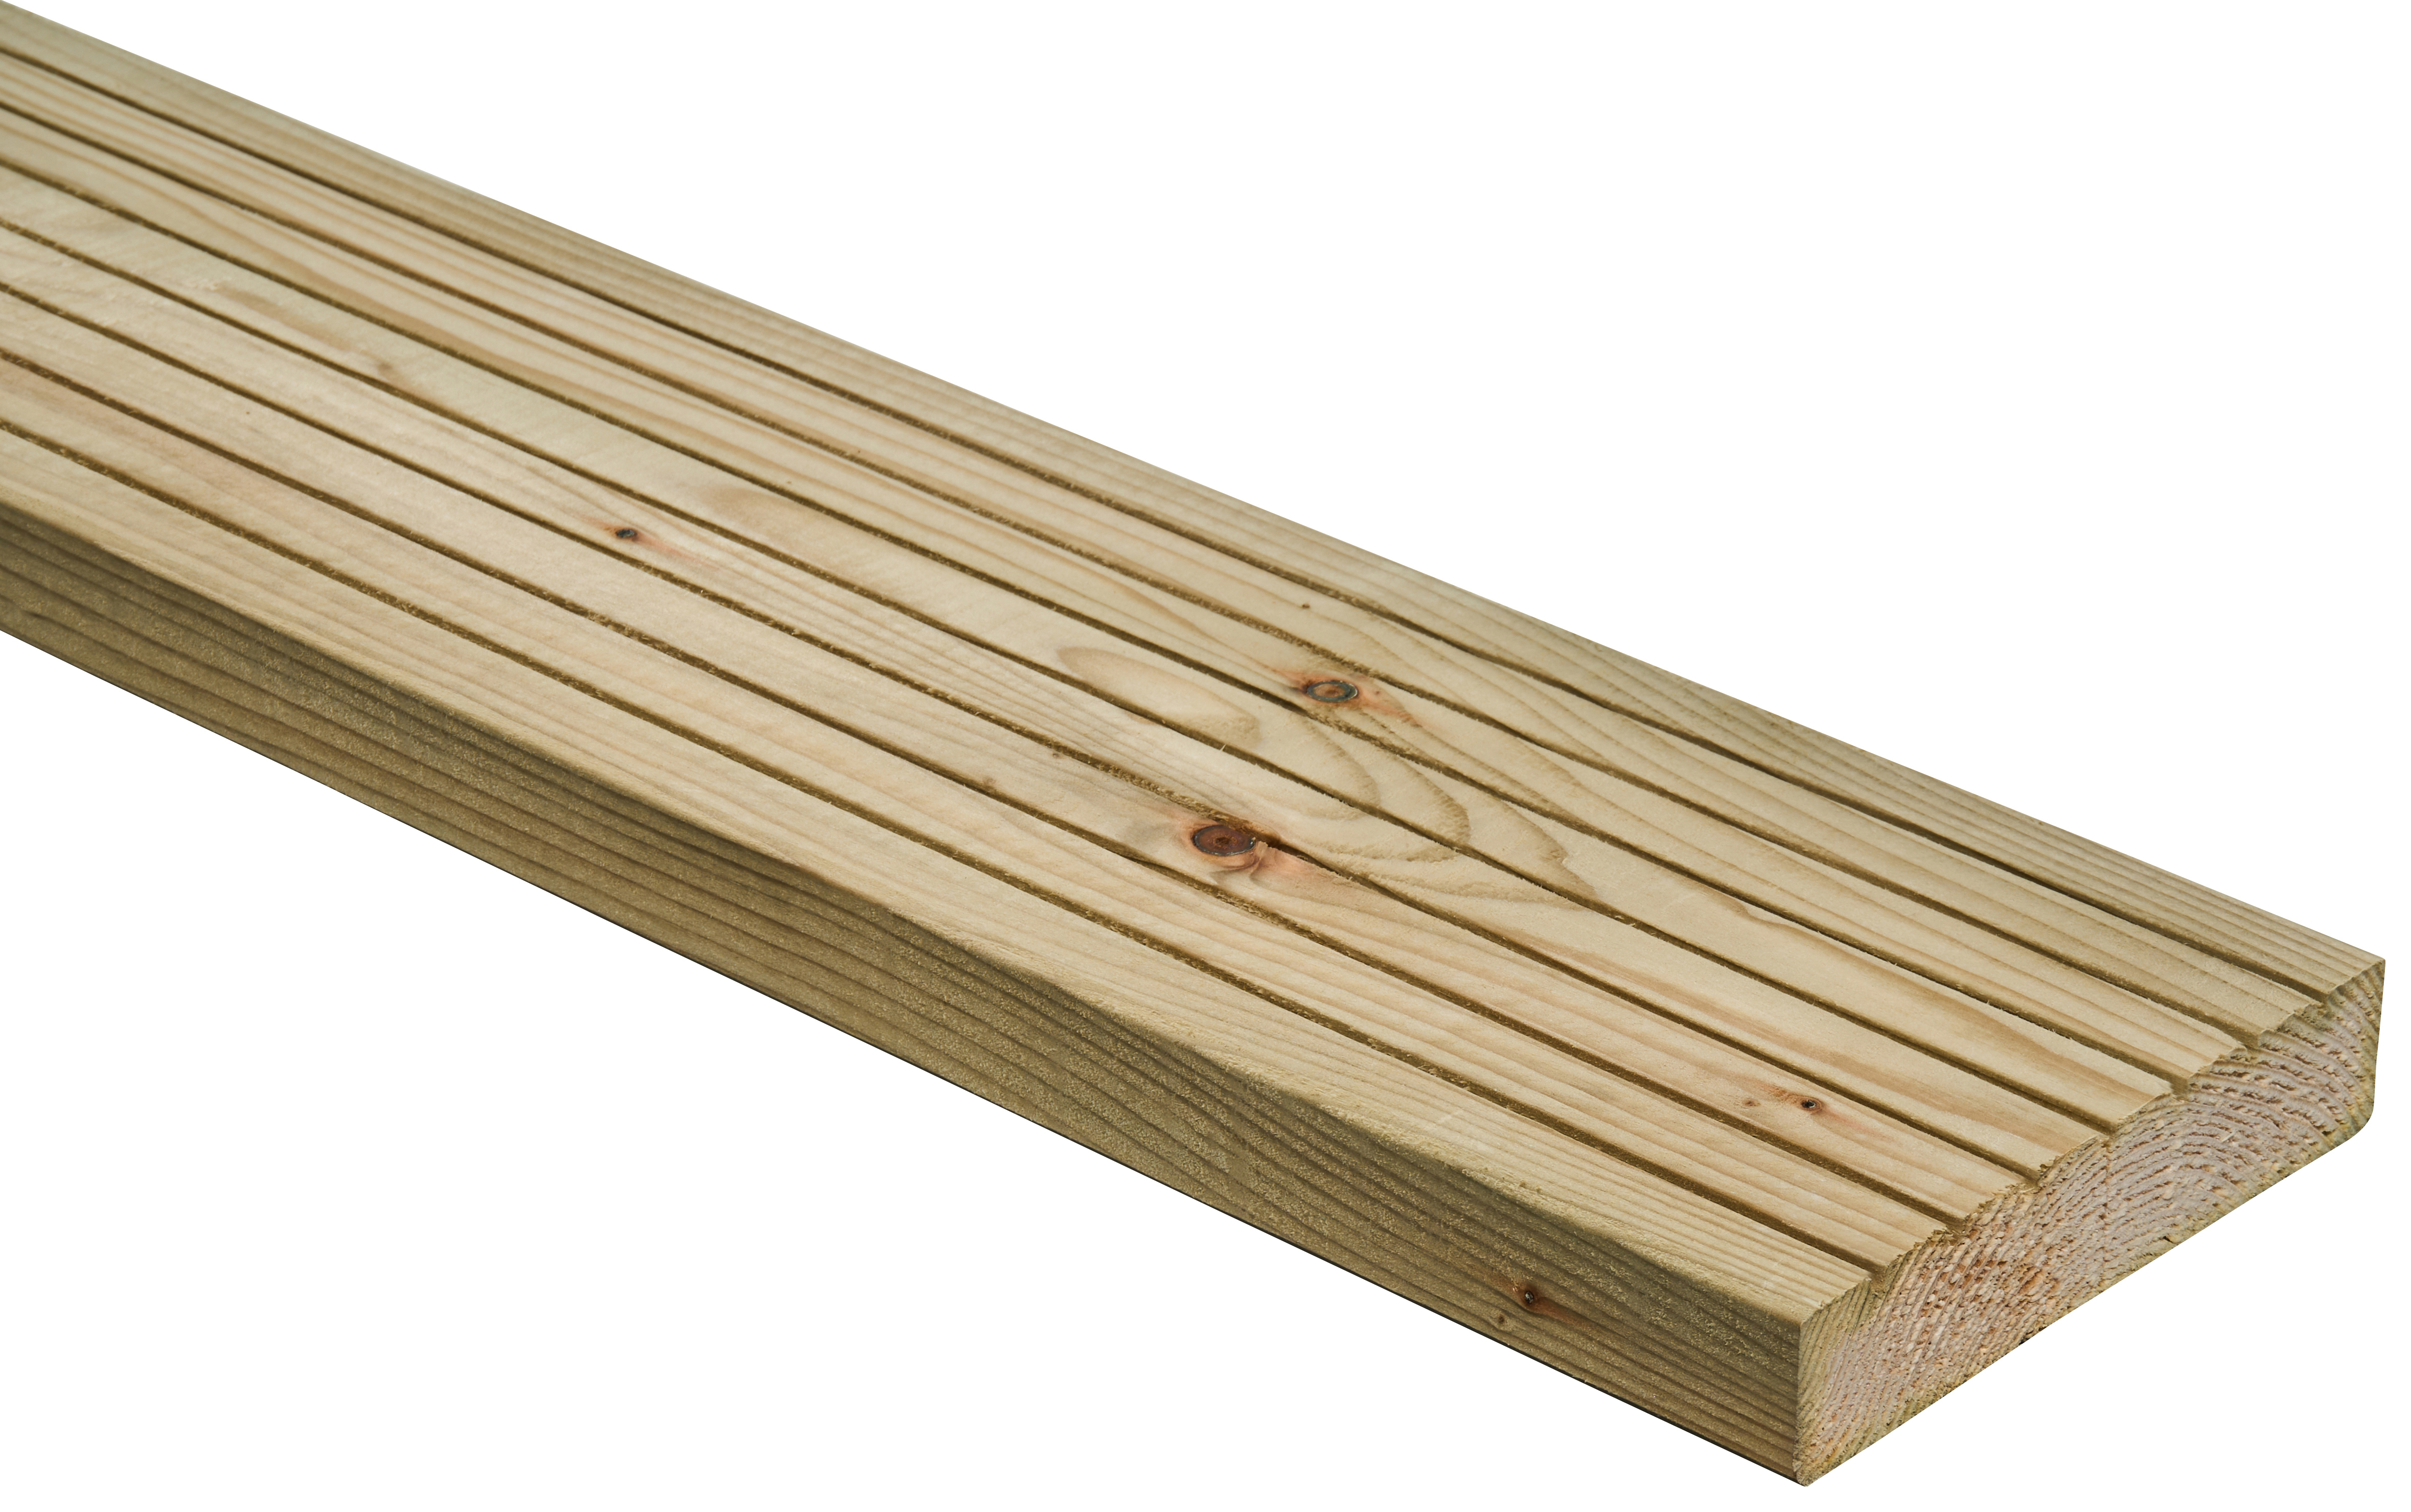 Wickes Standard Treated Deck Board - 25 x 120 x 1800mm